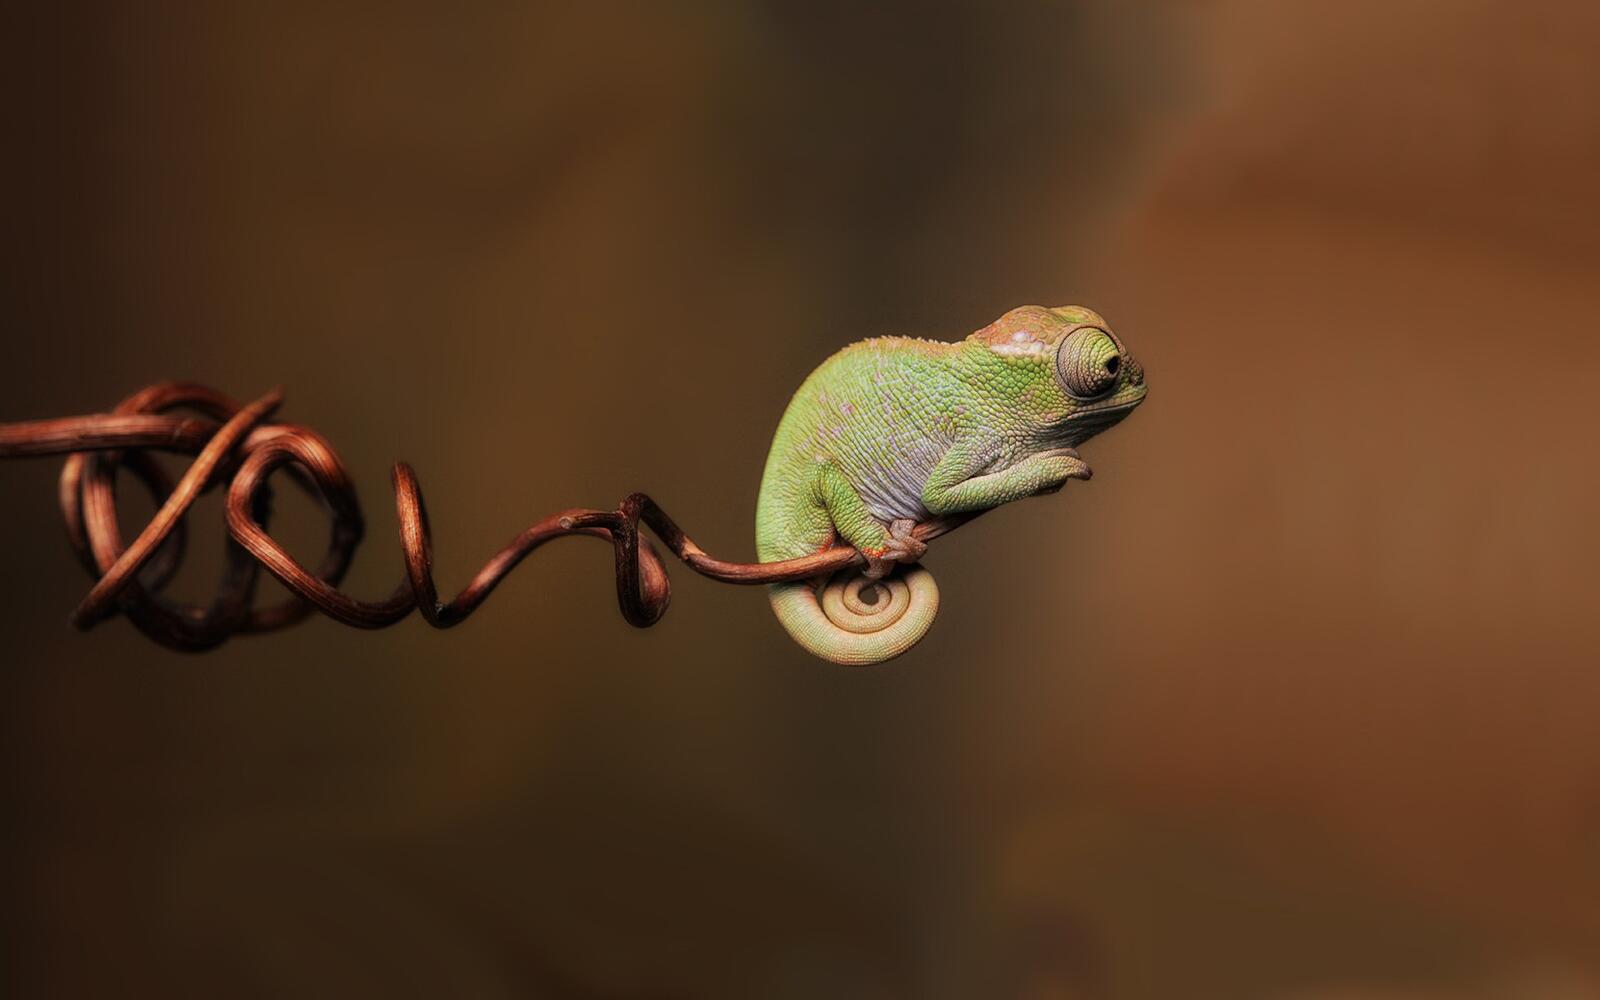 Wallpapers chameleon lizard edge on the desktop